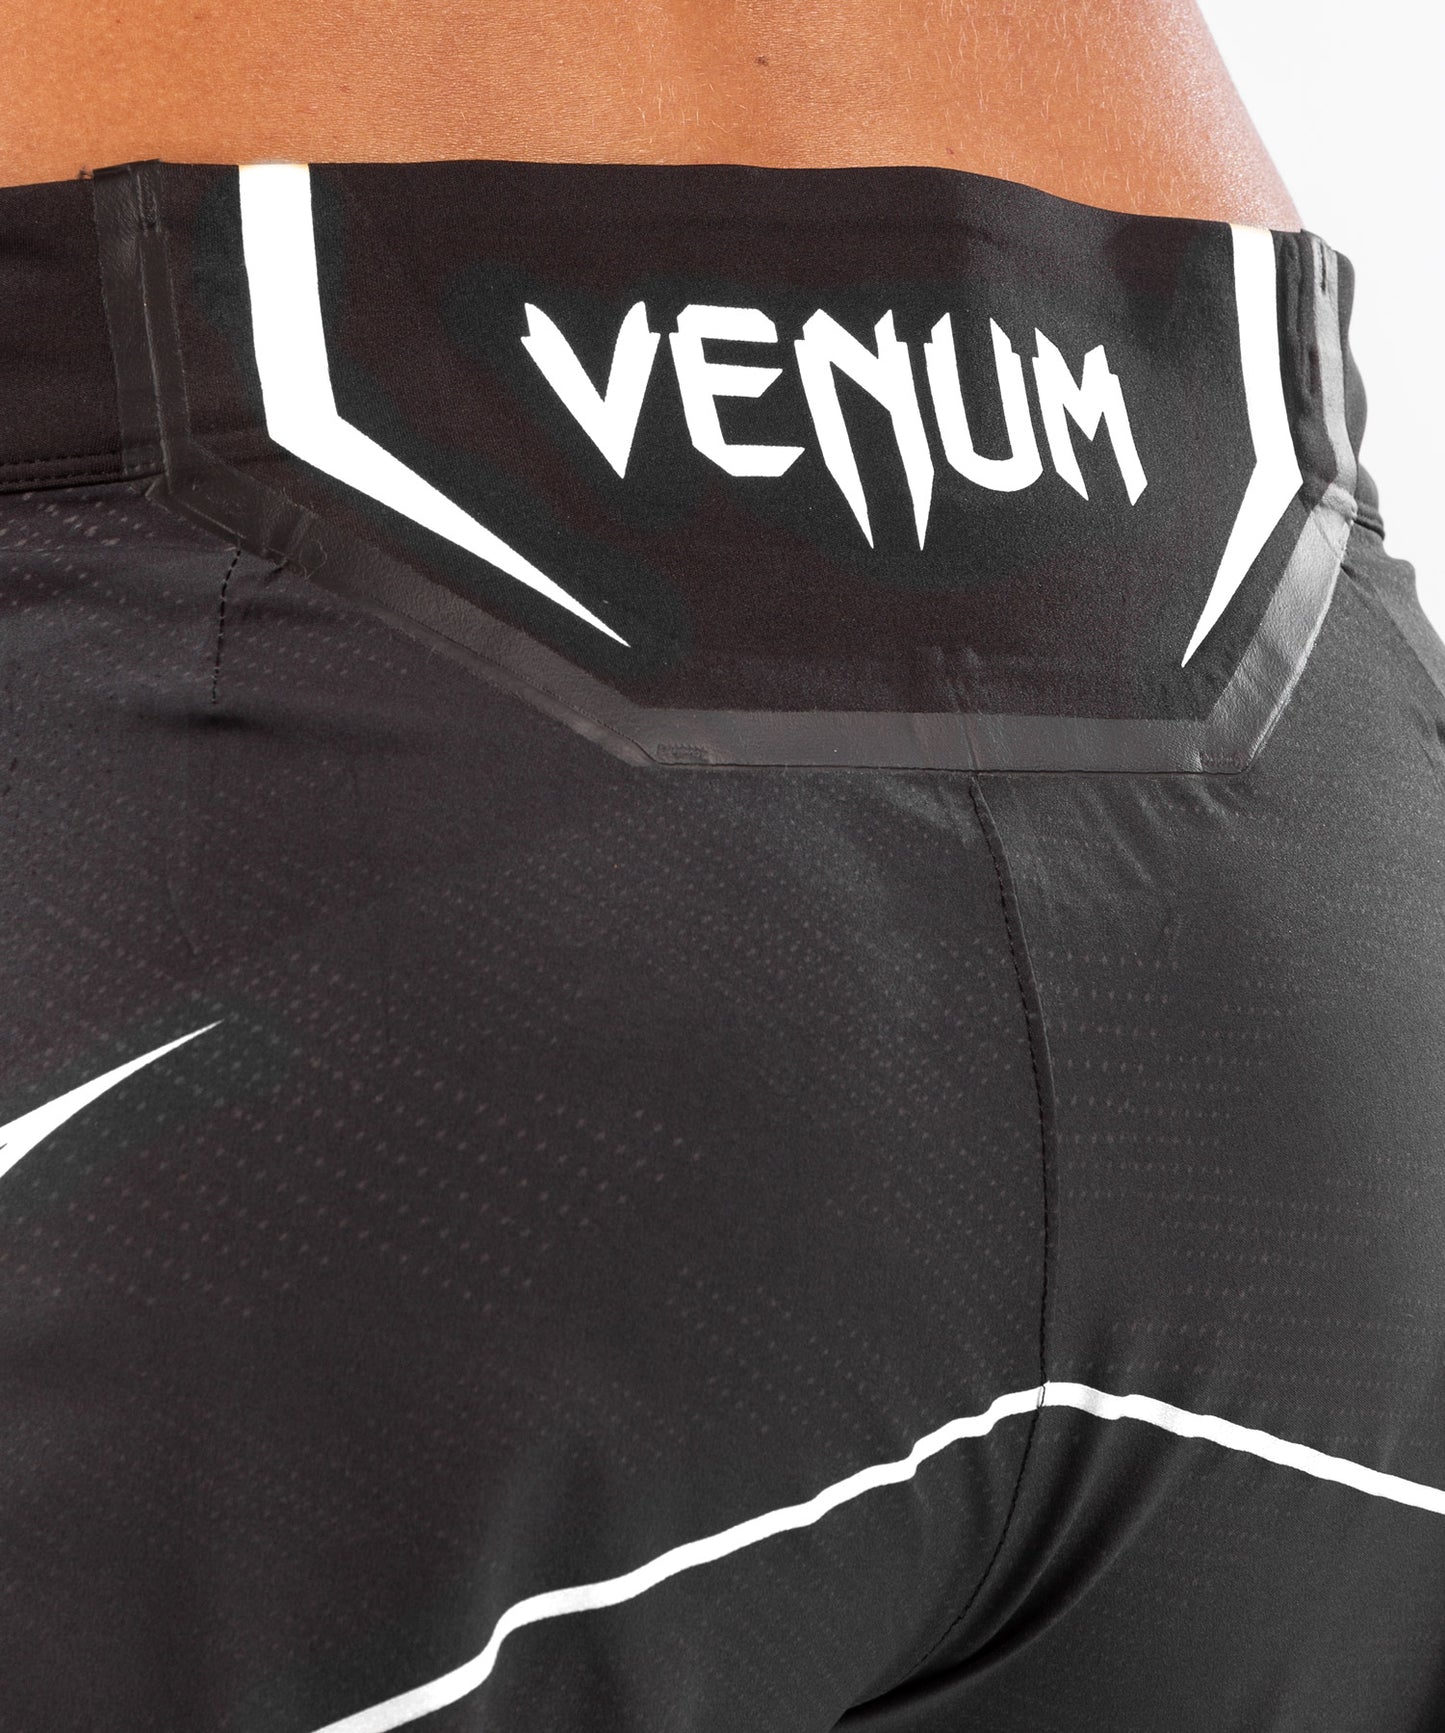 UFC Venum Authentic Fight Night Women's Shorts - Long Fit - Black